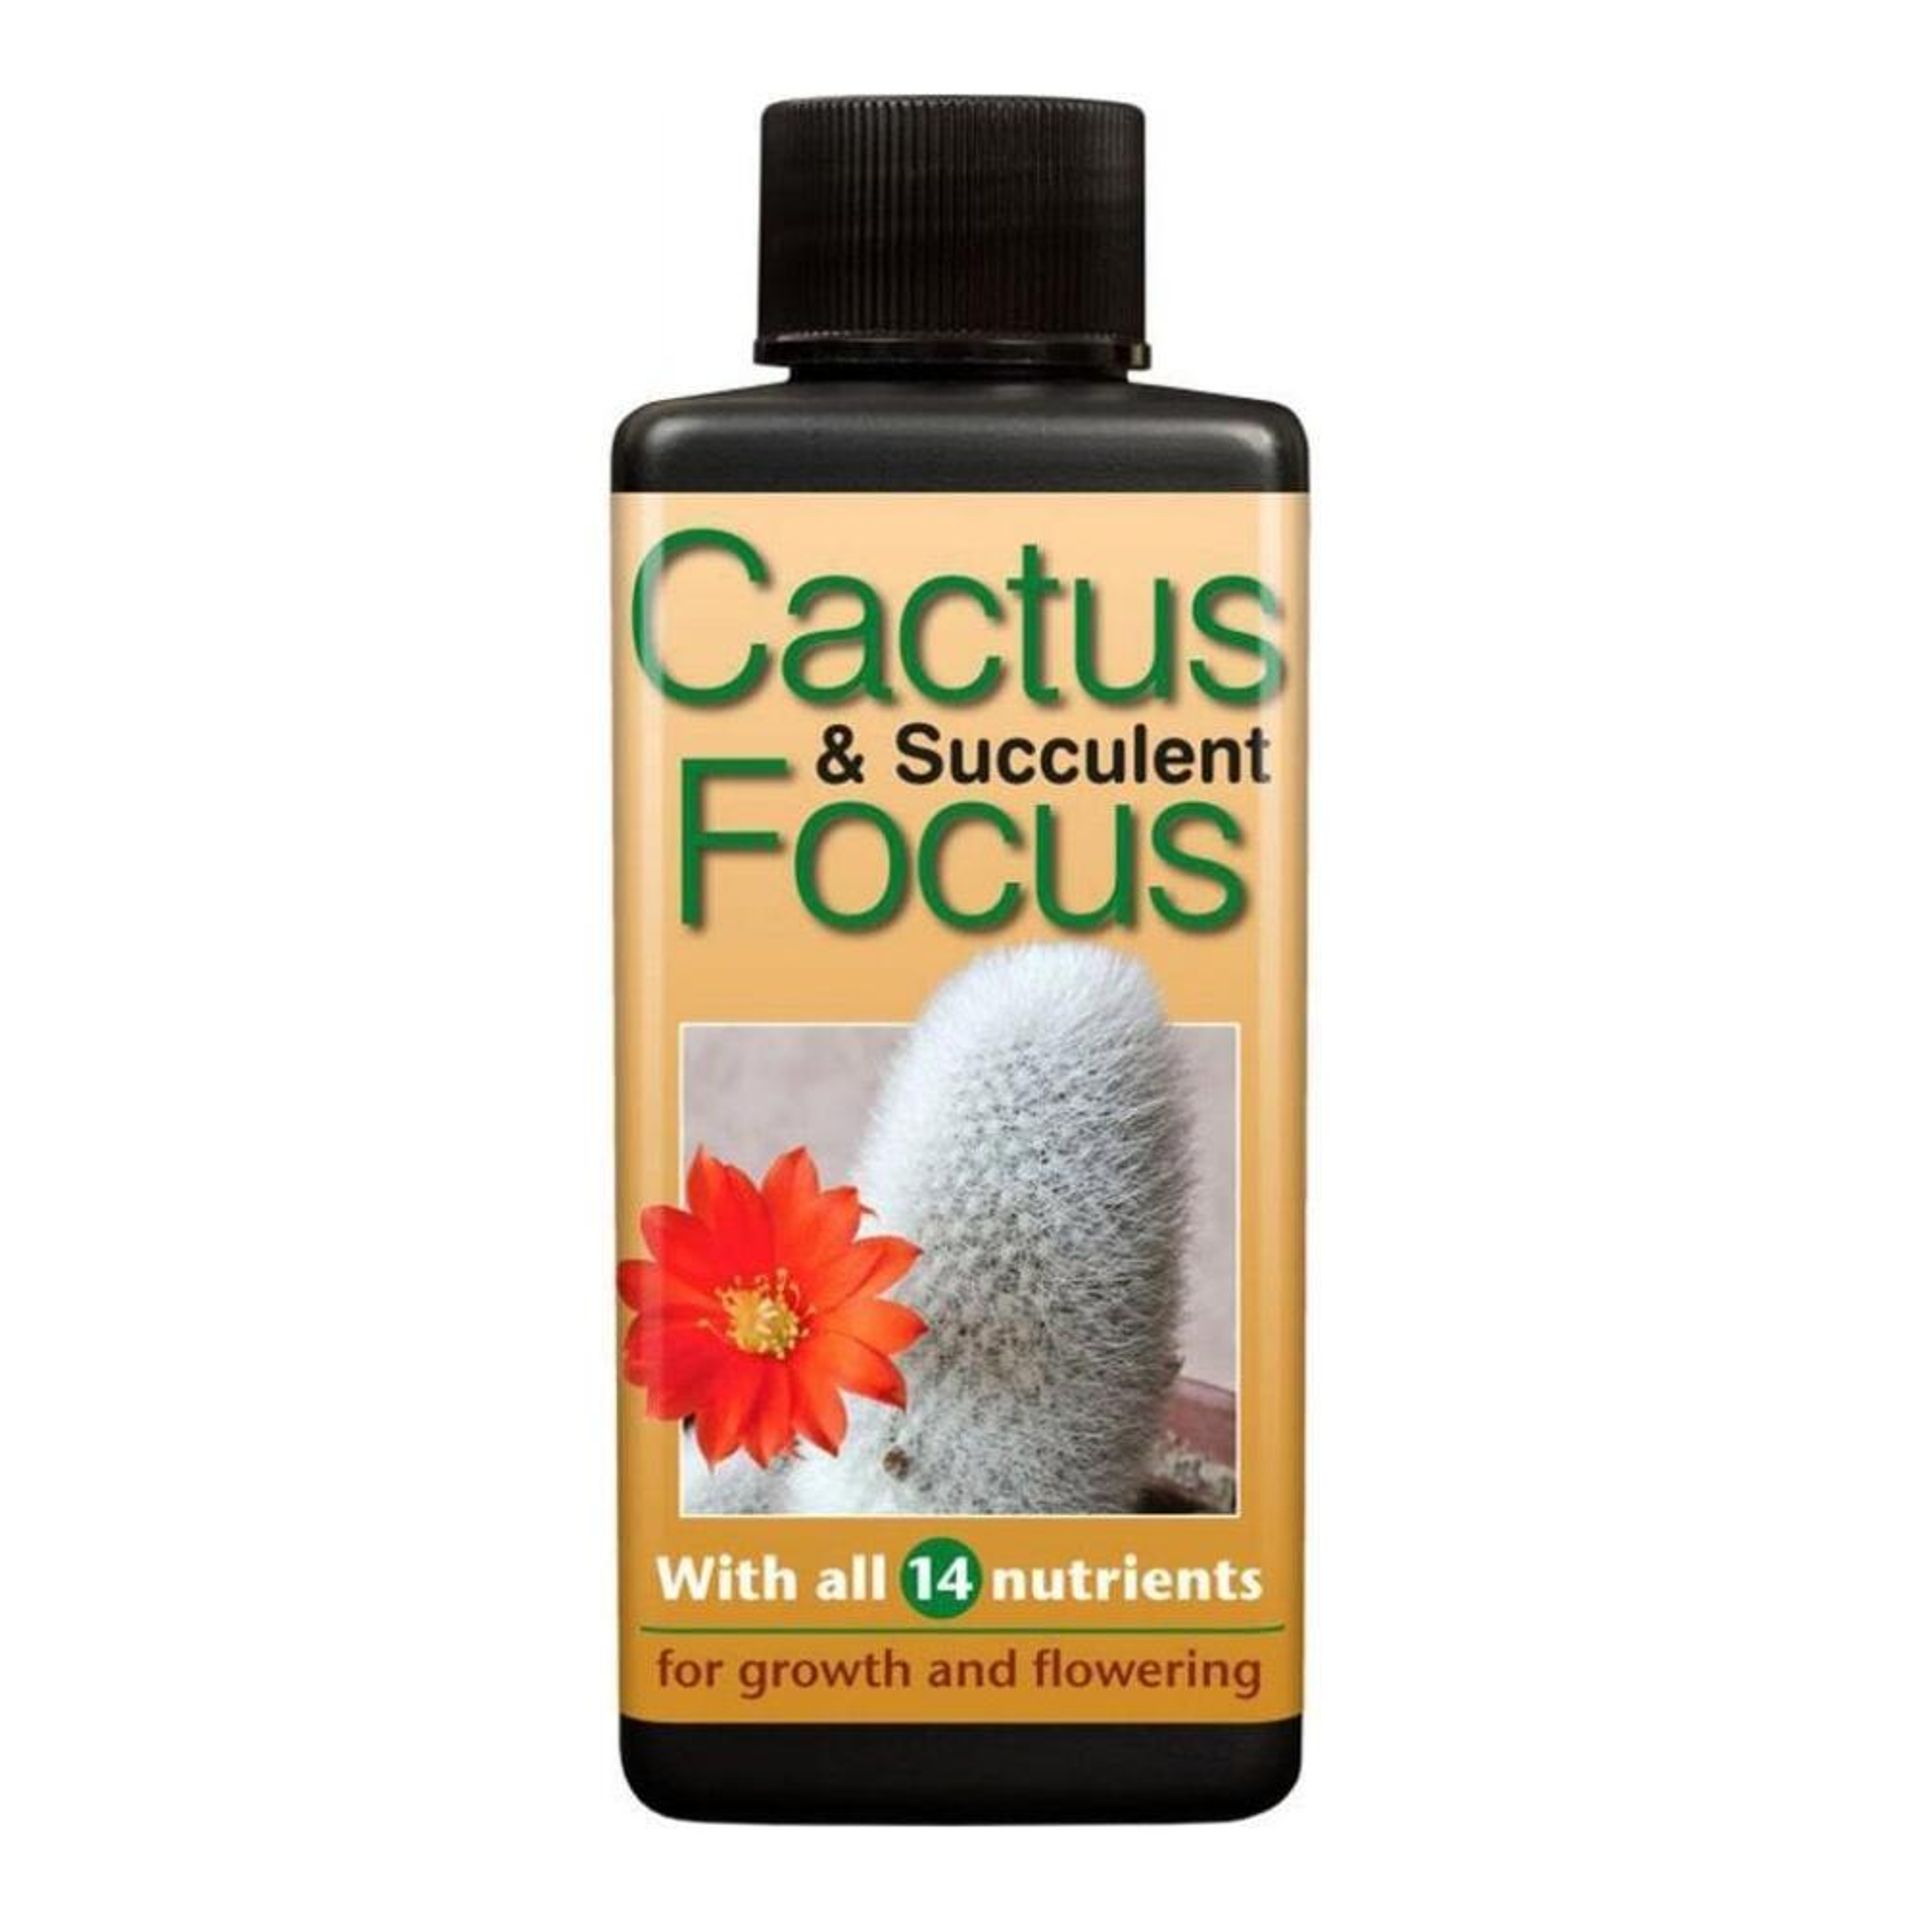 Cactus and Succulent Focus